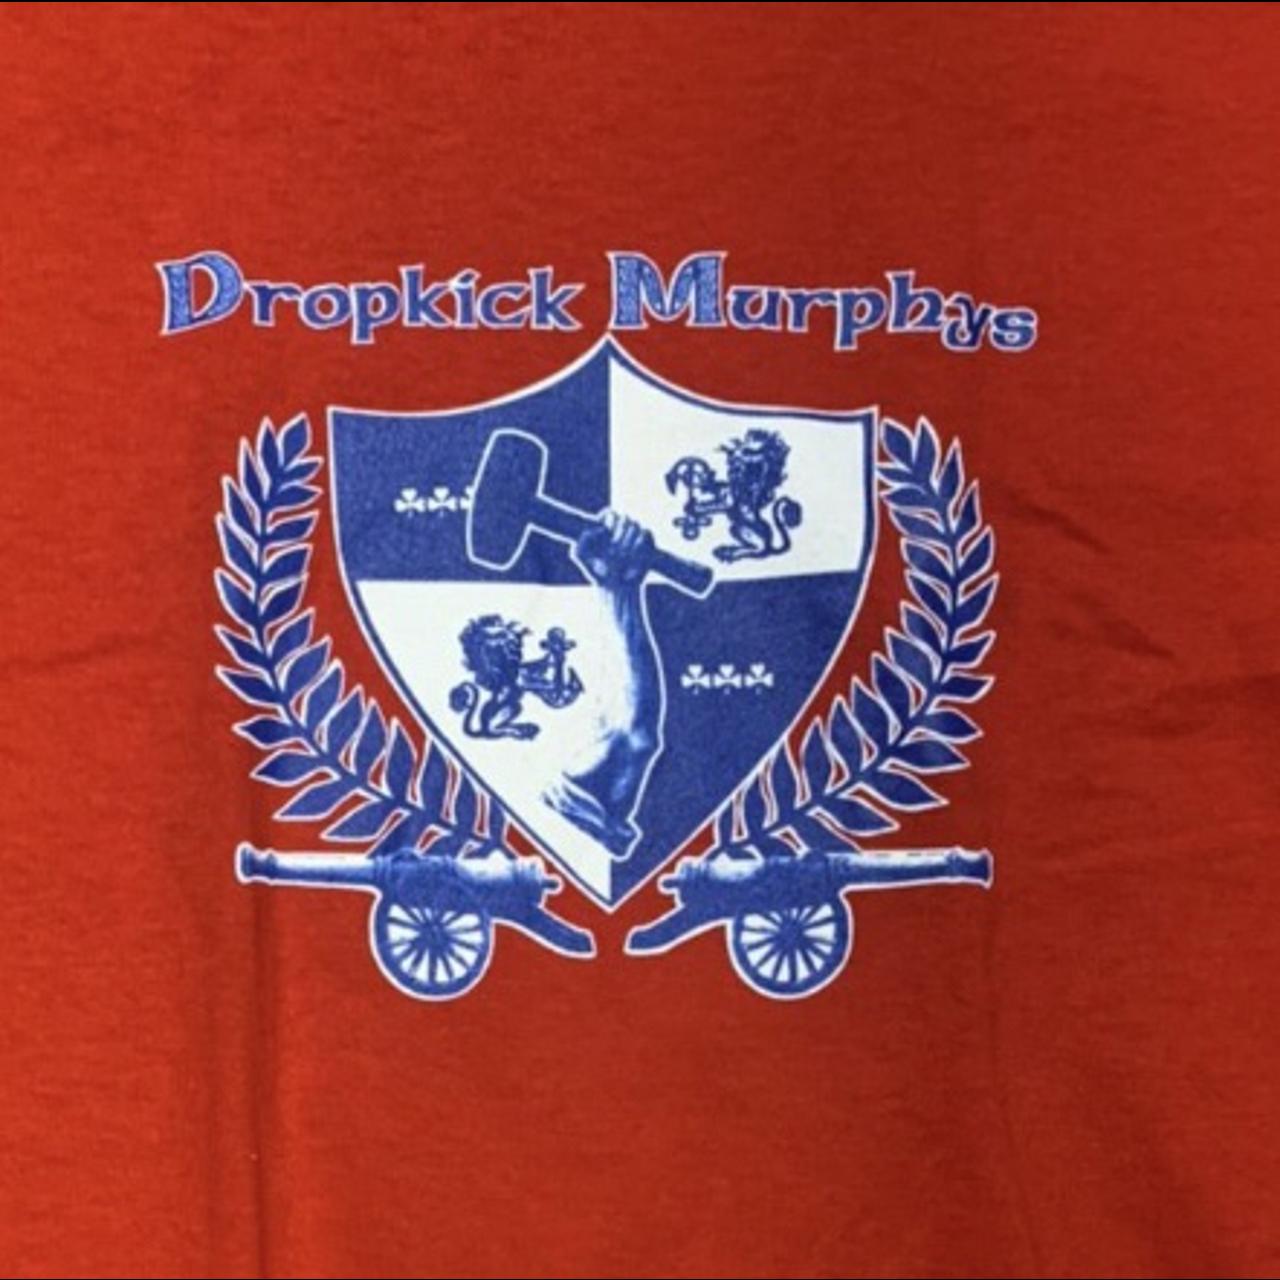 Dropkick Murphys T Shirt - Dropkick Murphys Short Stories Crest T-Shirt SM